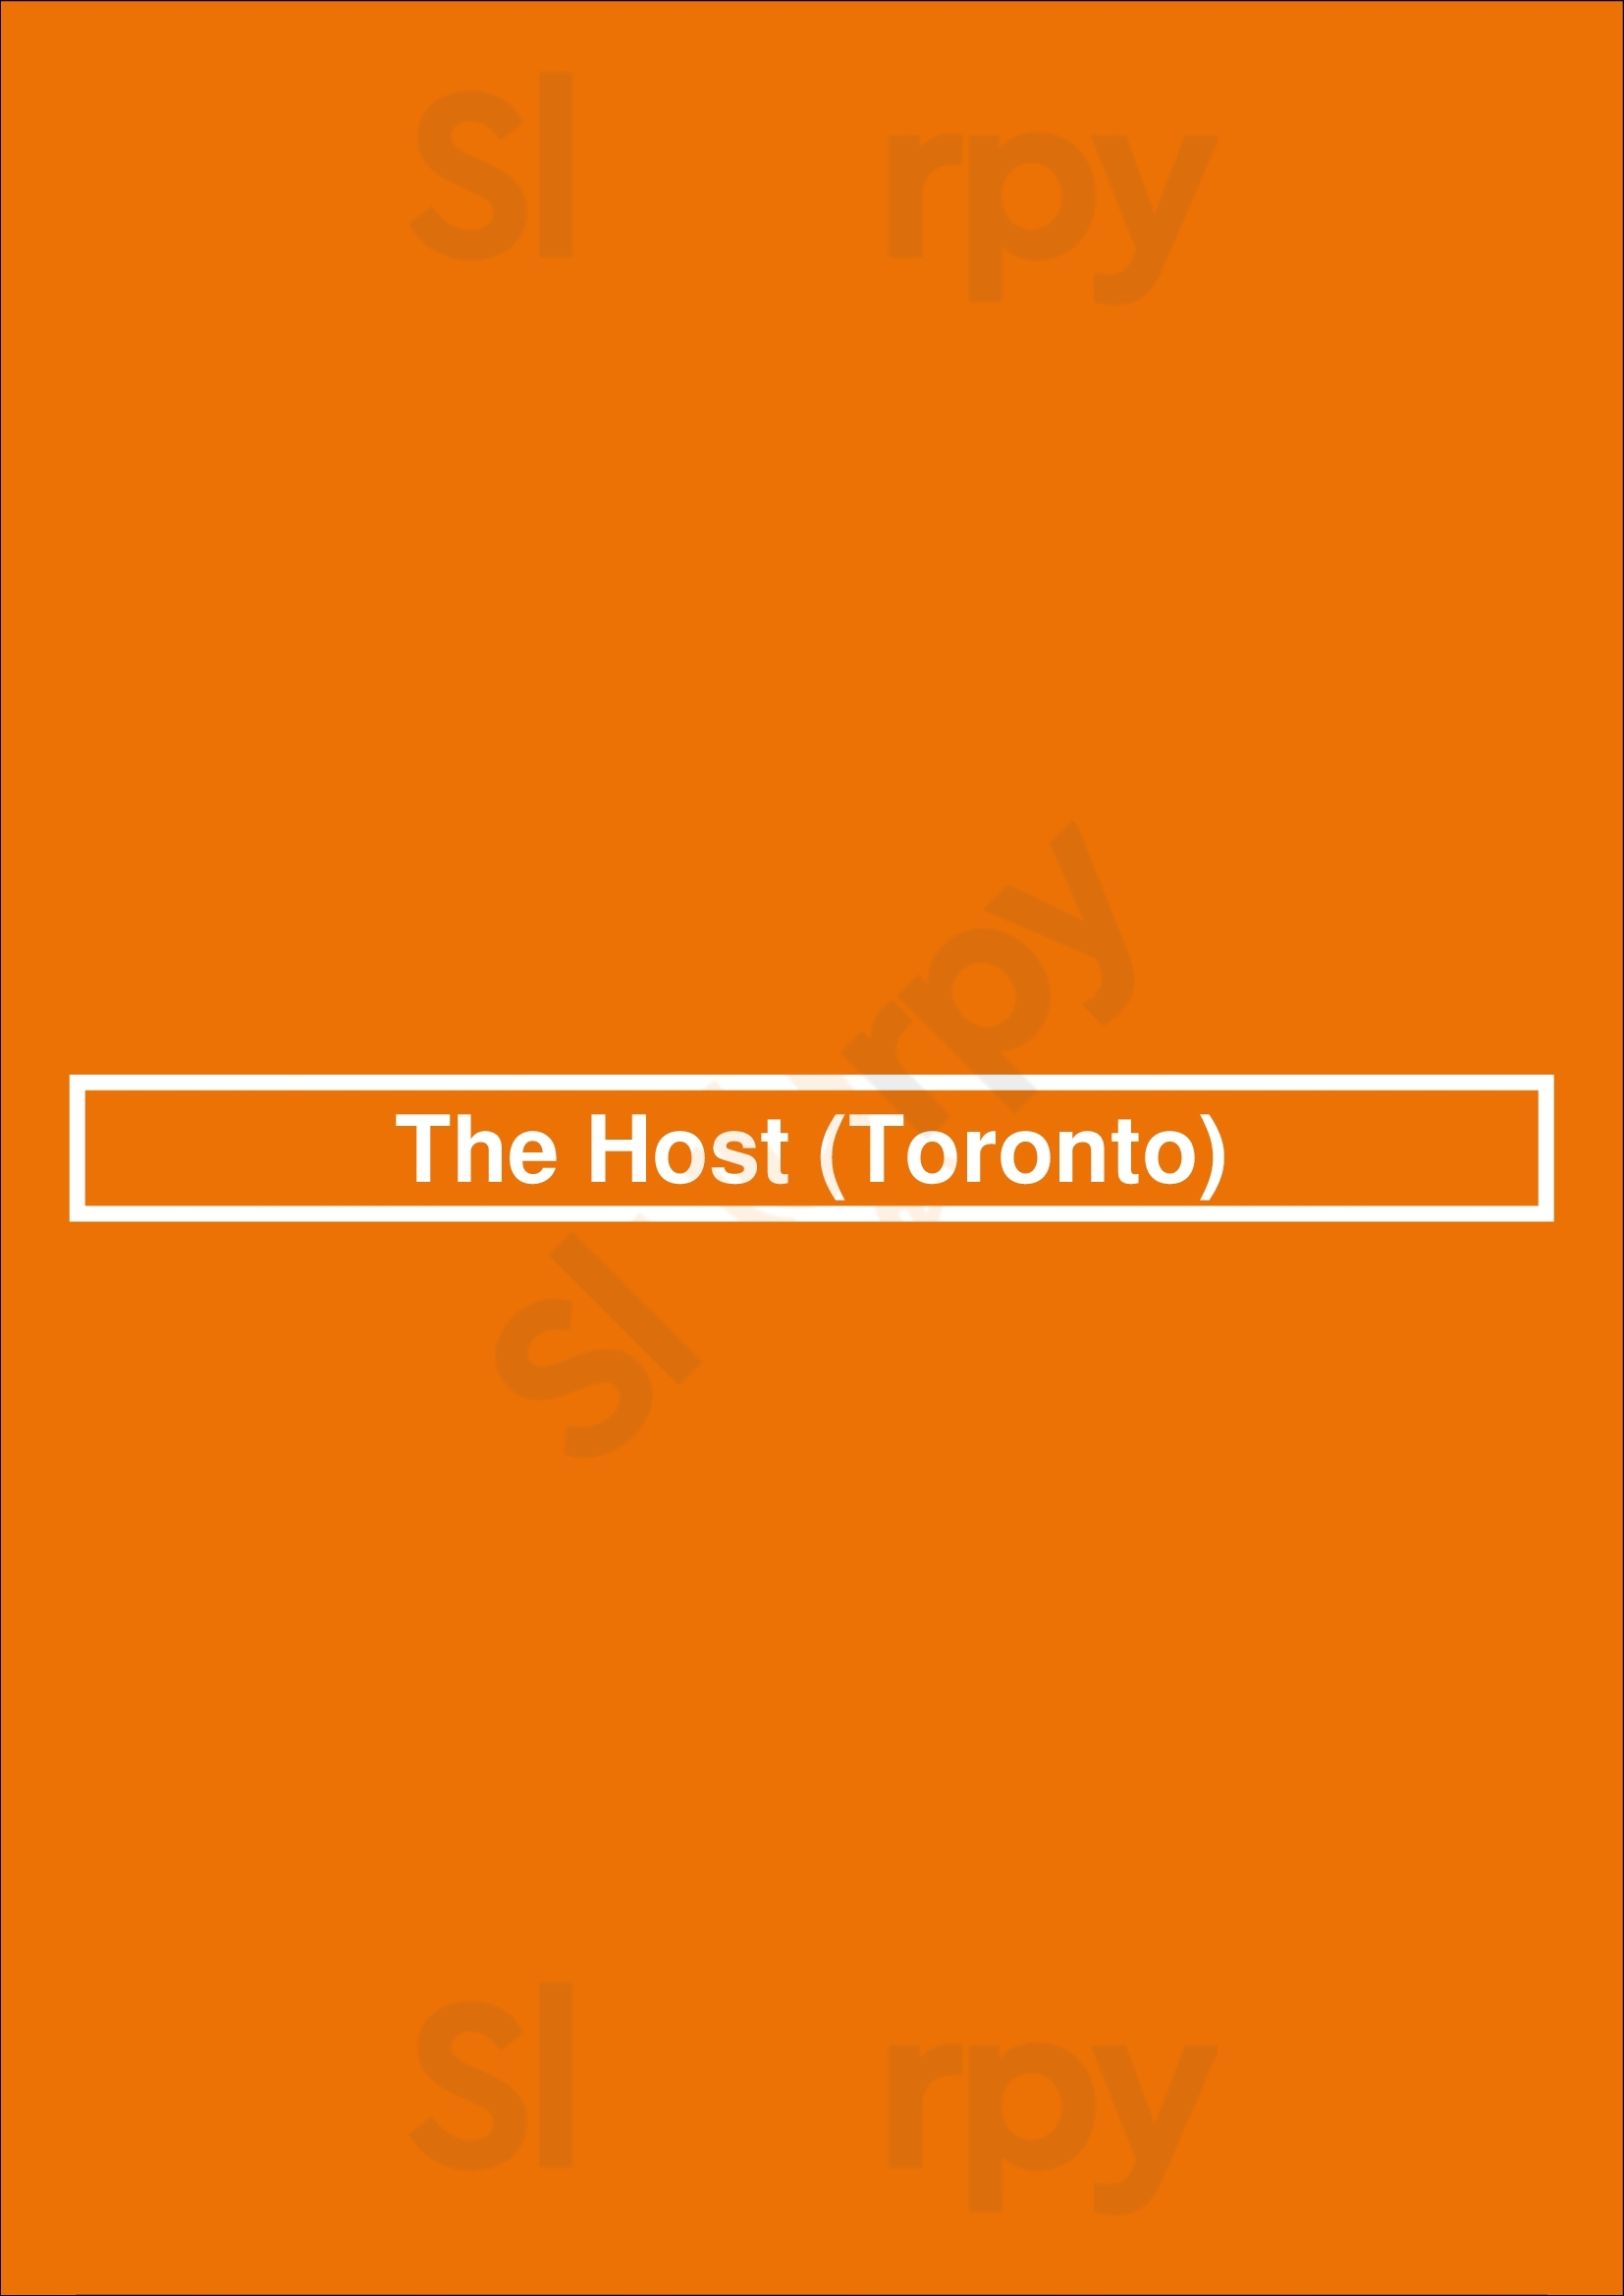 The Host Toronto Menu - 1